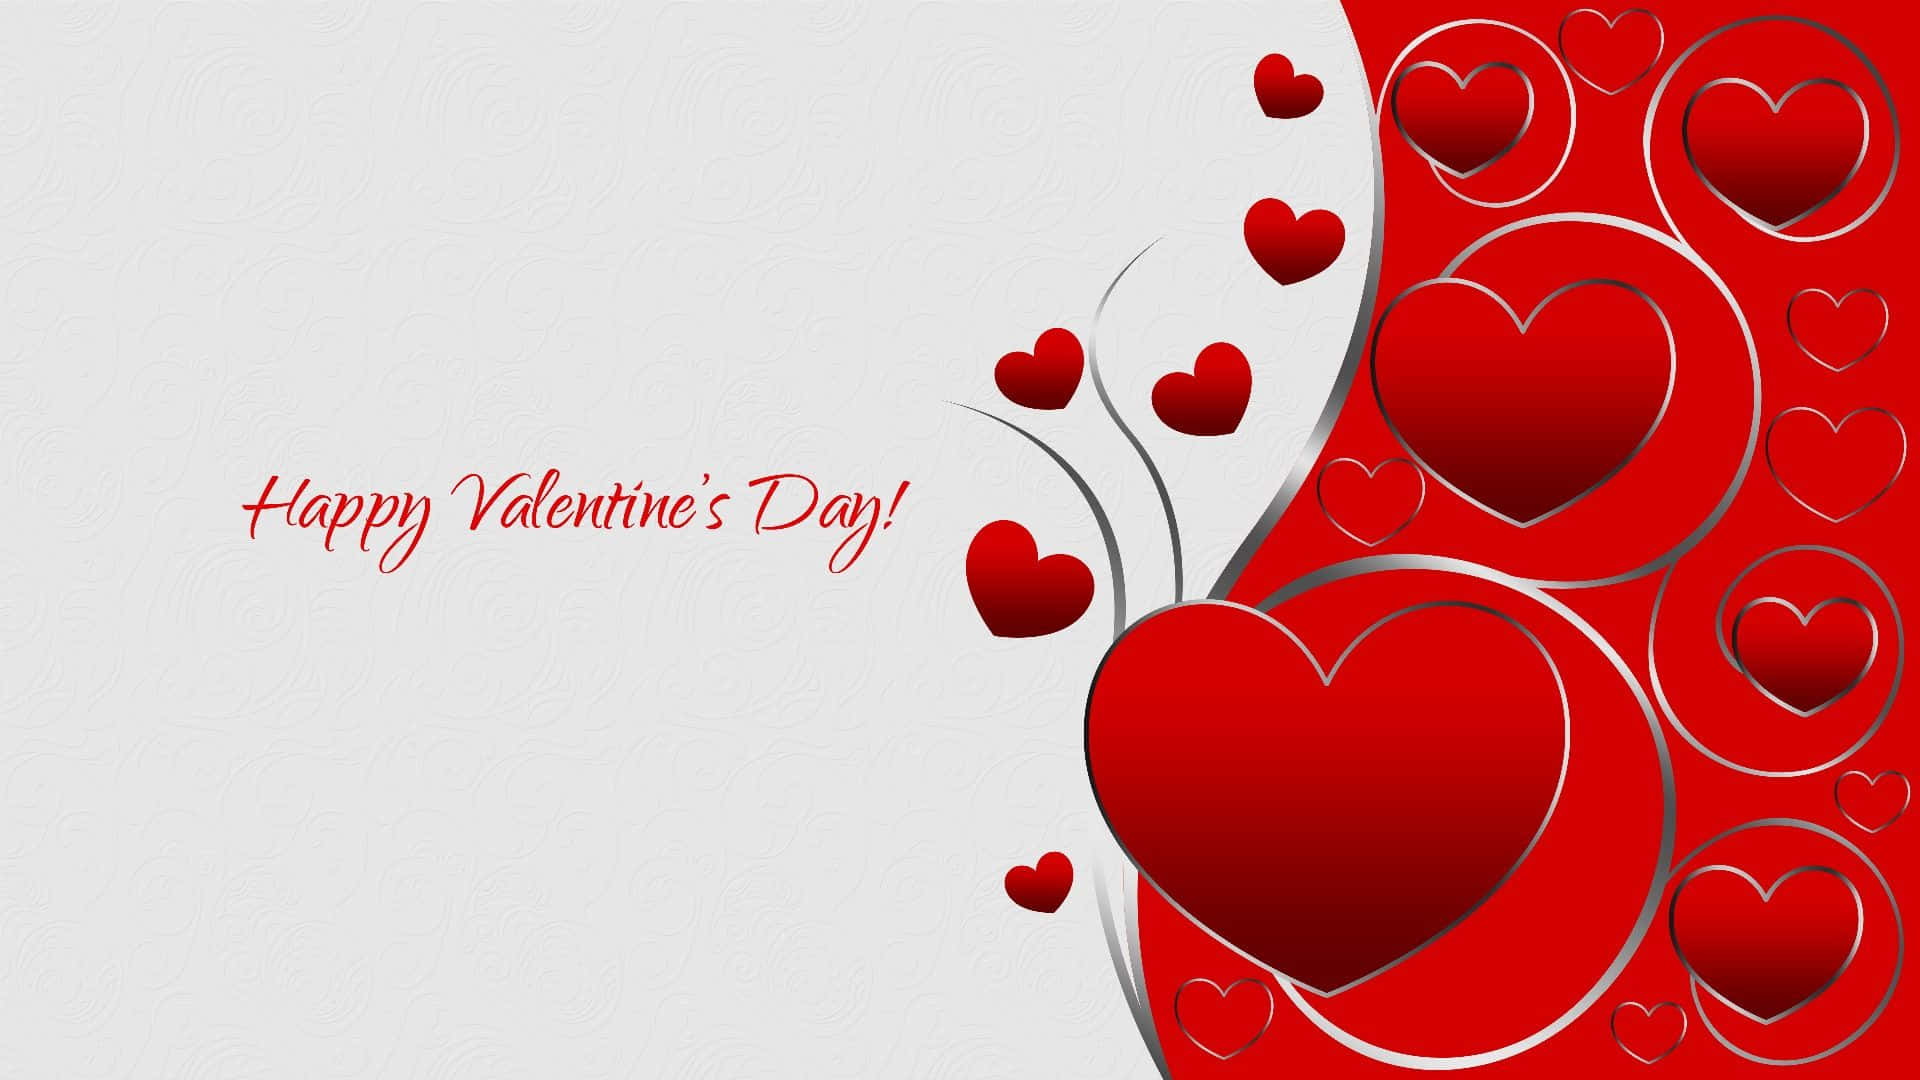 Comparteel Amor Este Día De San Valentín.